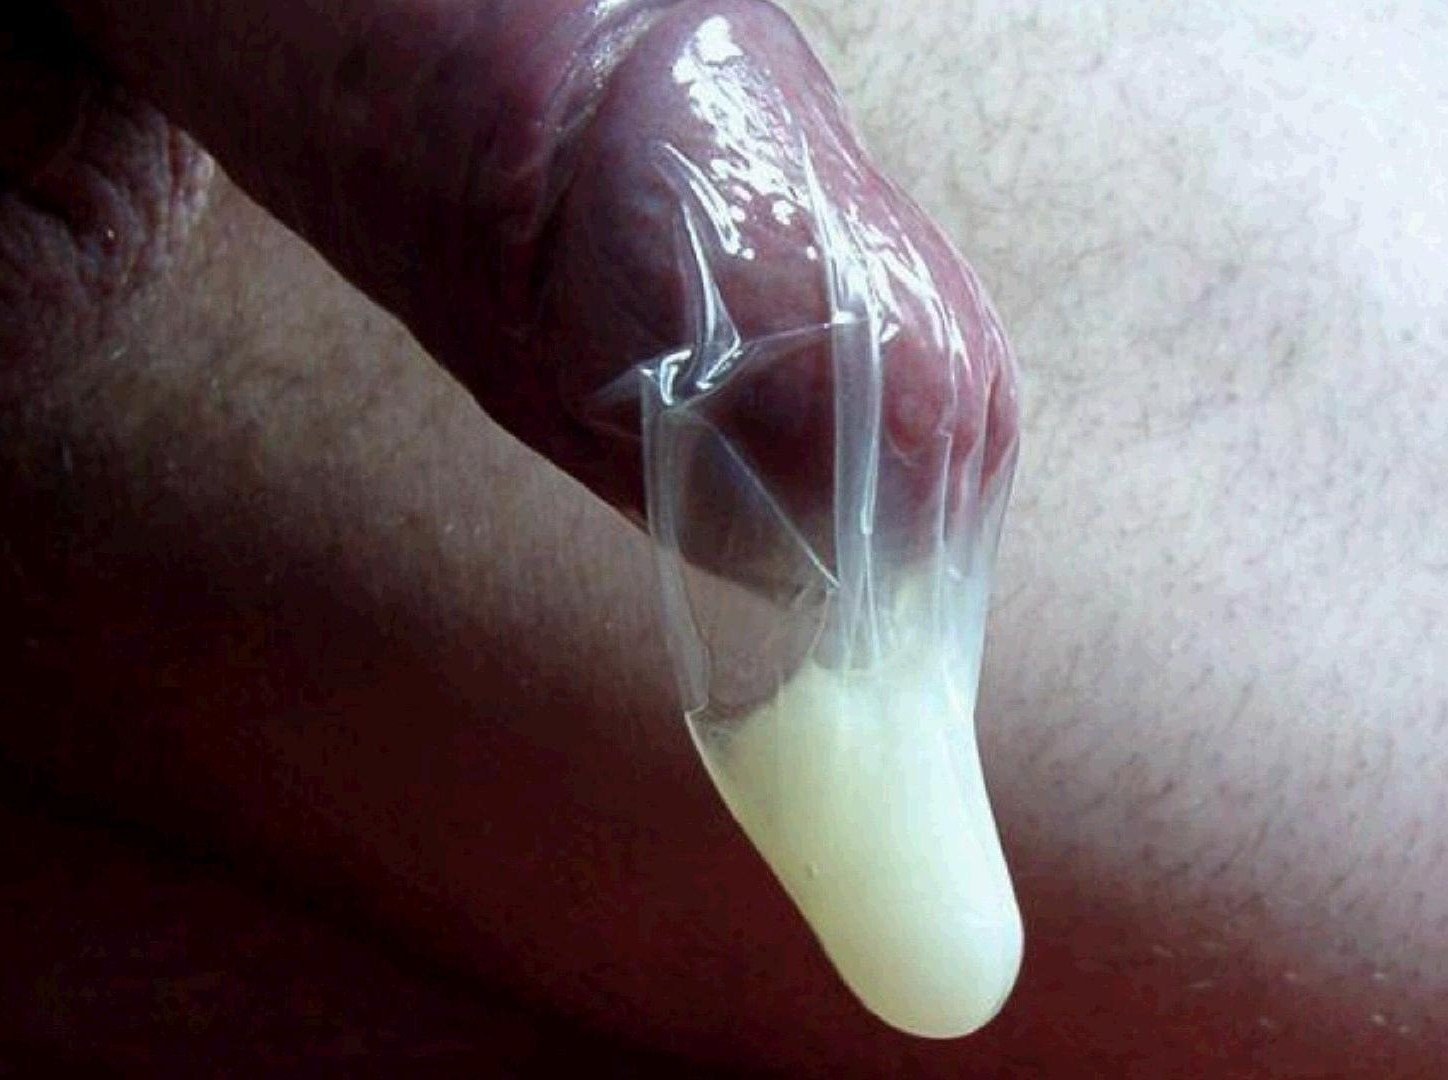 презерватив слетел когда в нем была сперма фото 87